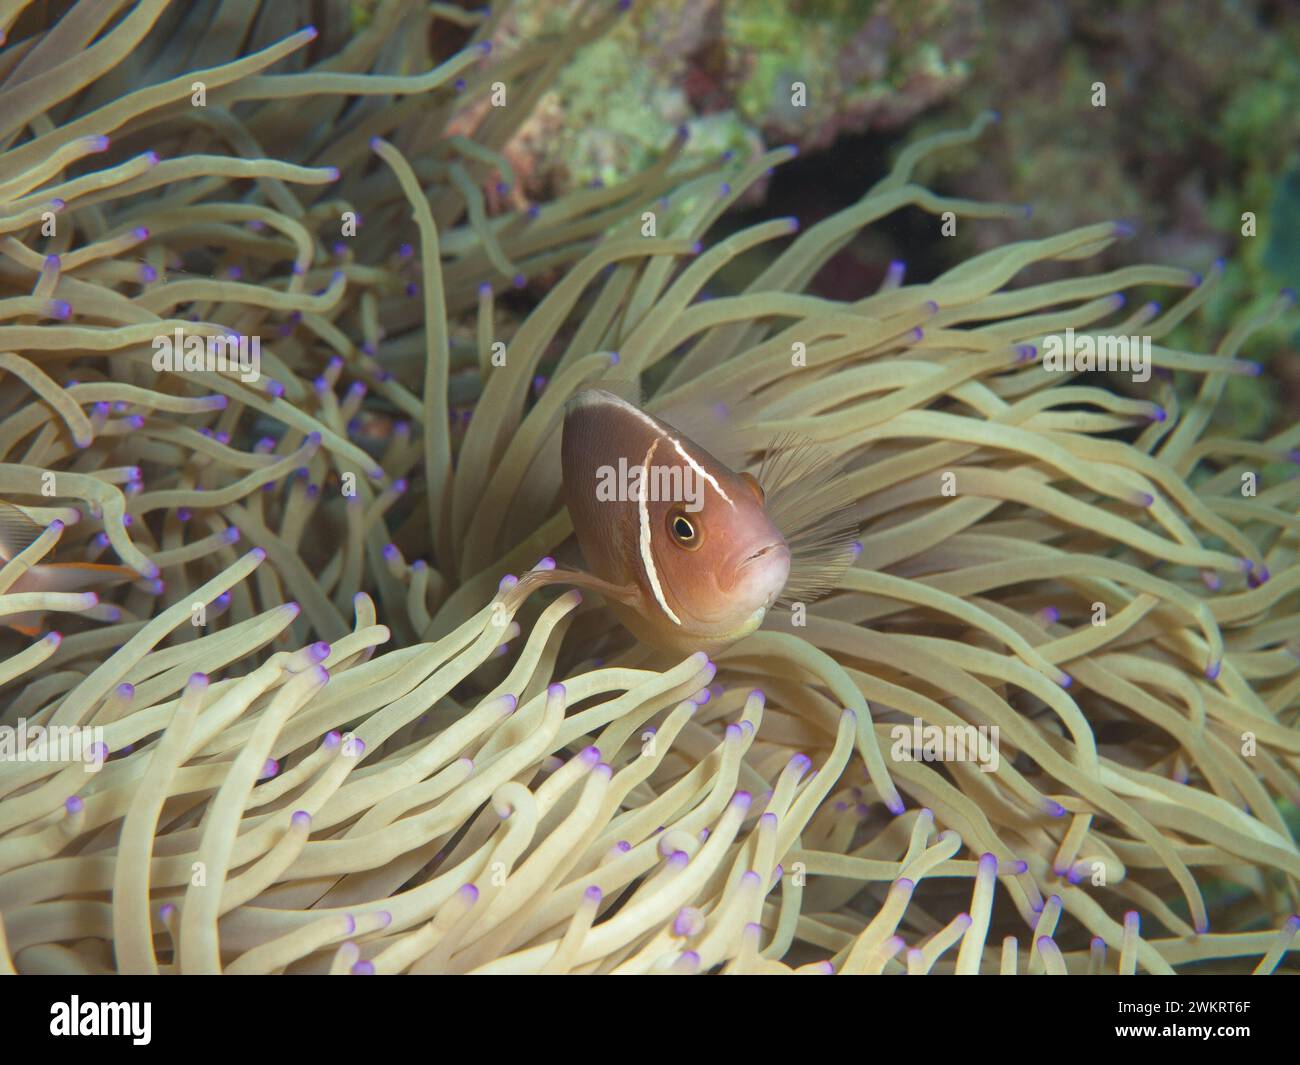 Anemonenfische sind immer in Bewegung: Clownfish sieht neugierig aus seiner Anemone. Unterwasserfotografie: Ein Korallenriff bei Moalboal, Cebu, Philippinen. Stockfoto